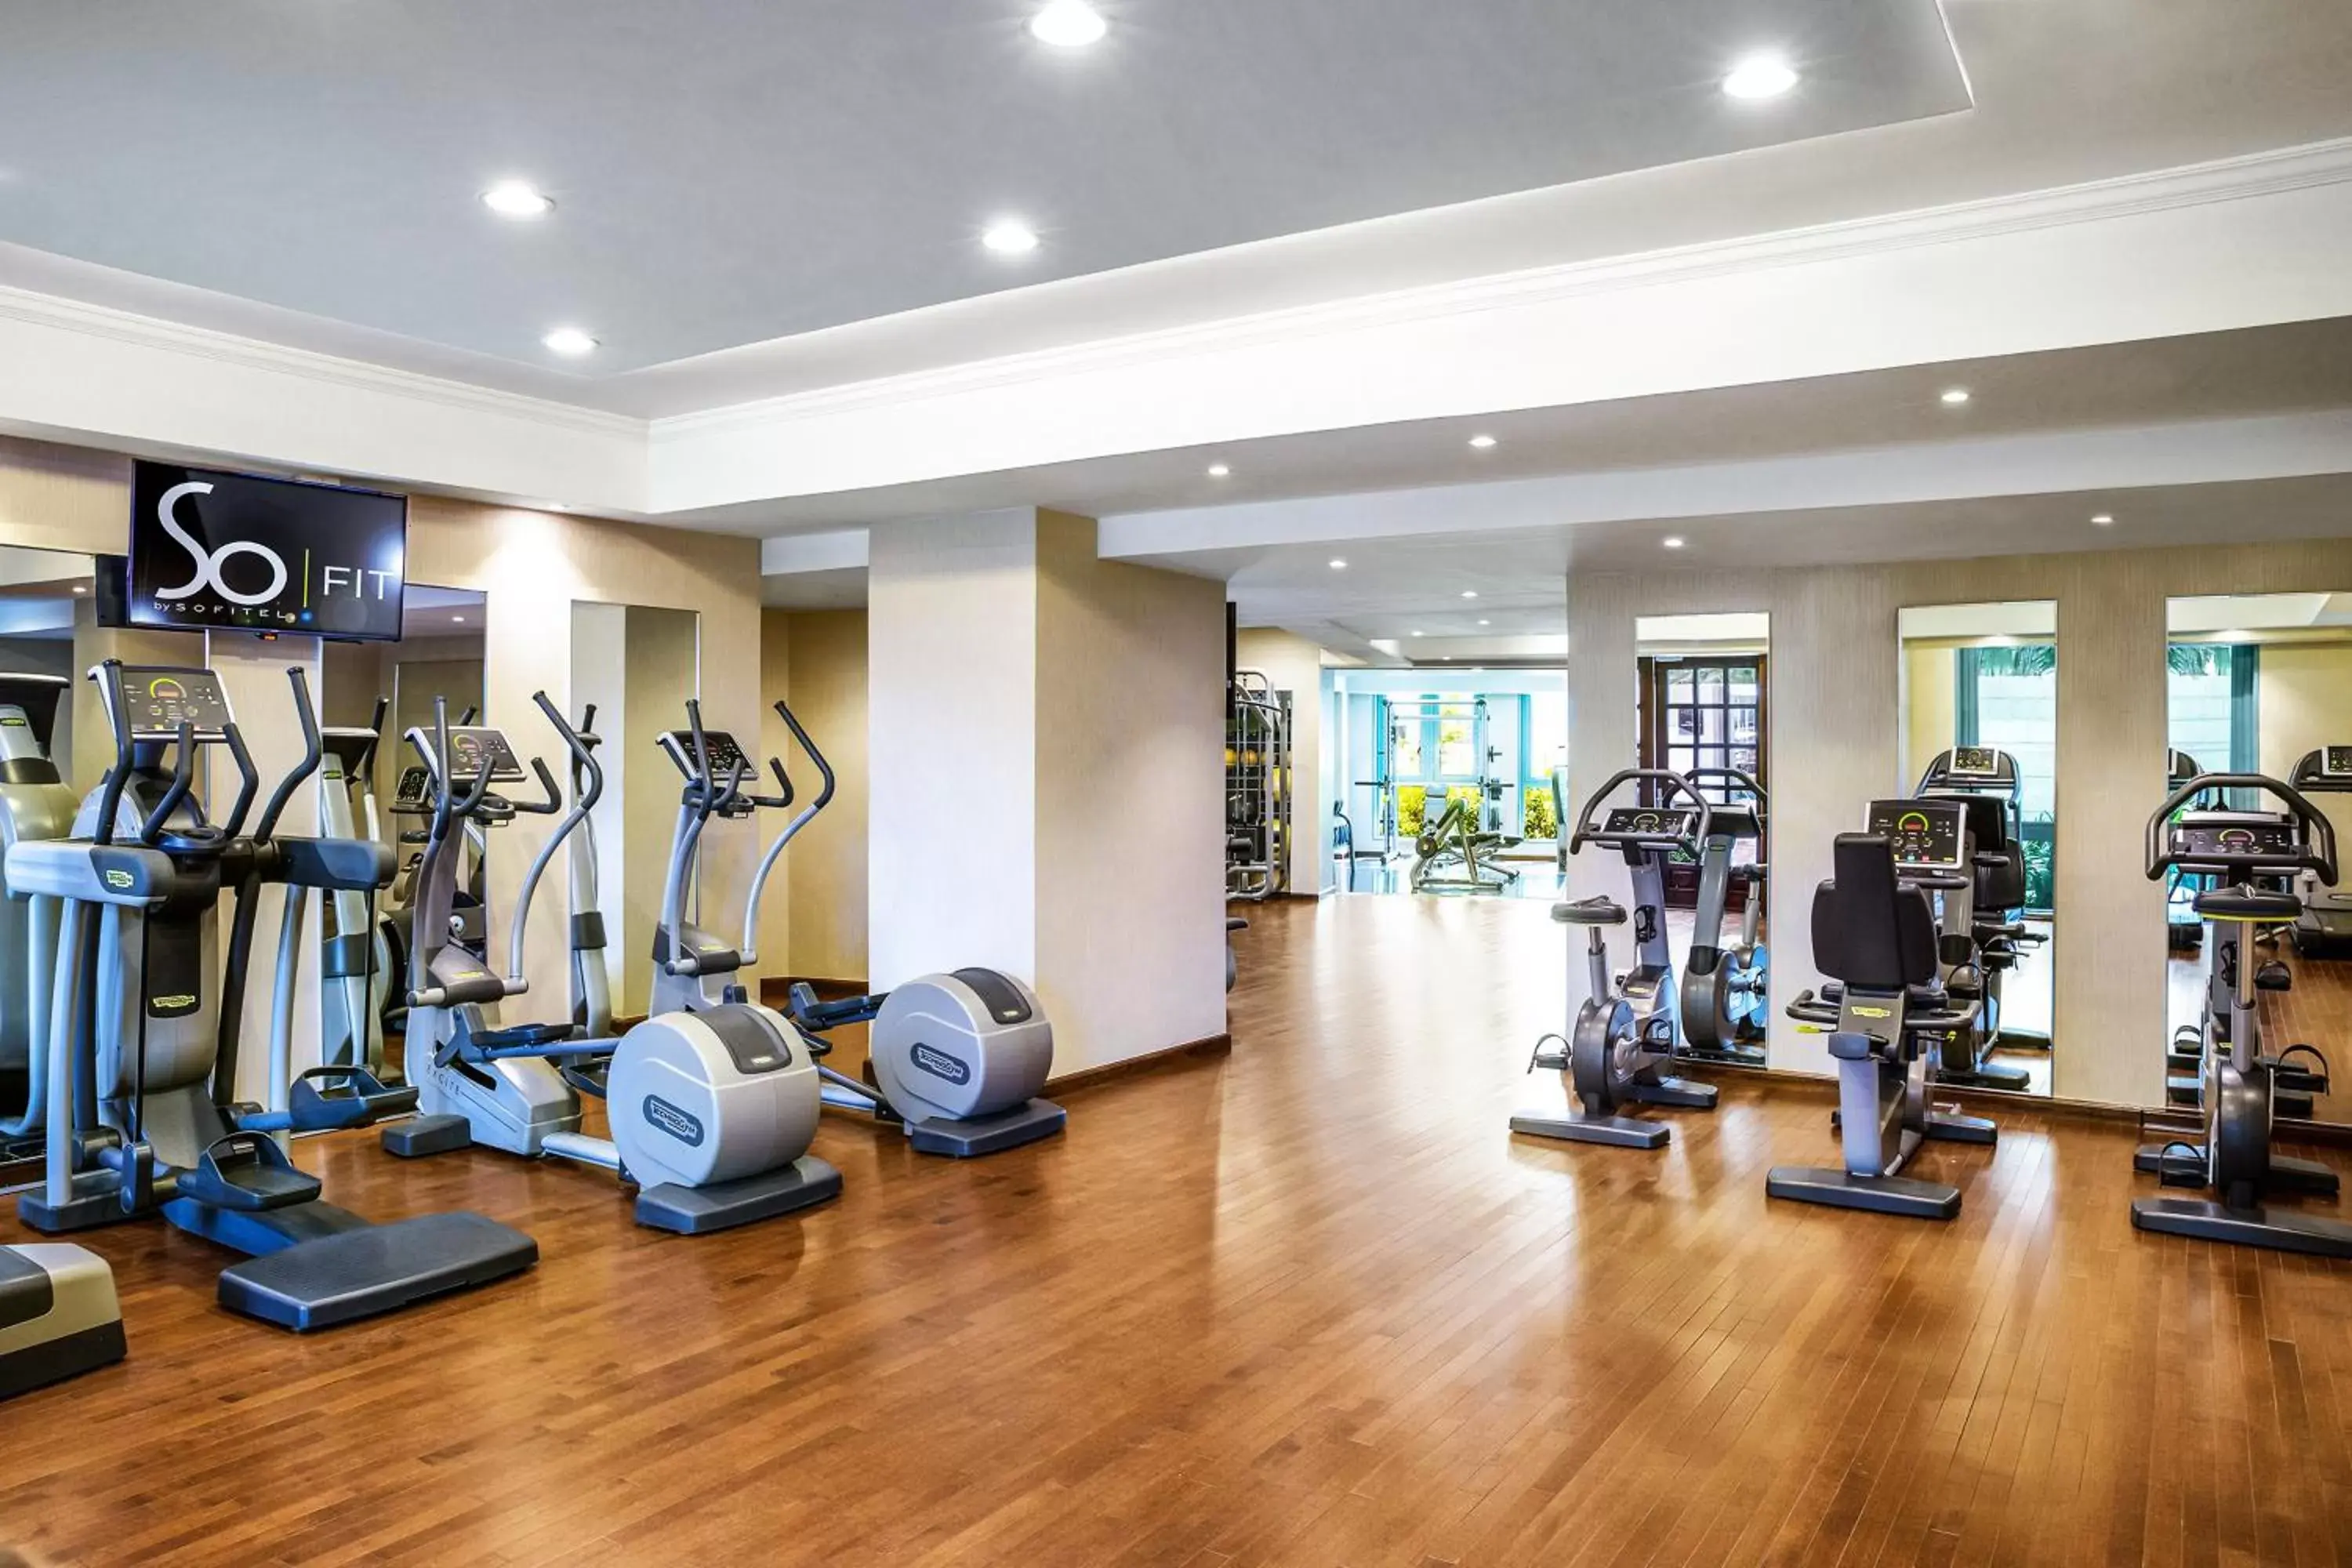 Fitness centre/facilities, Fitness Center/Facilities in Sofitel Abu Dhabi Corniche